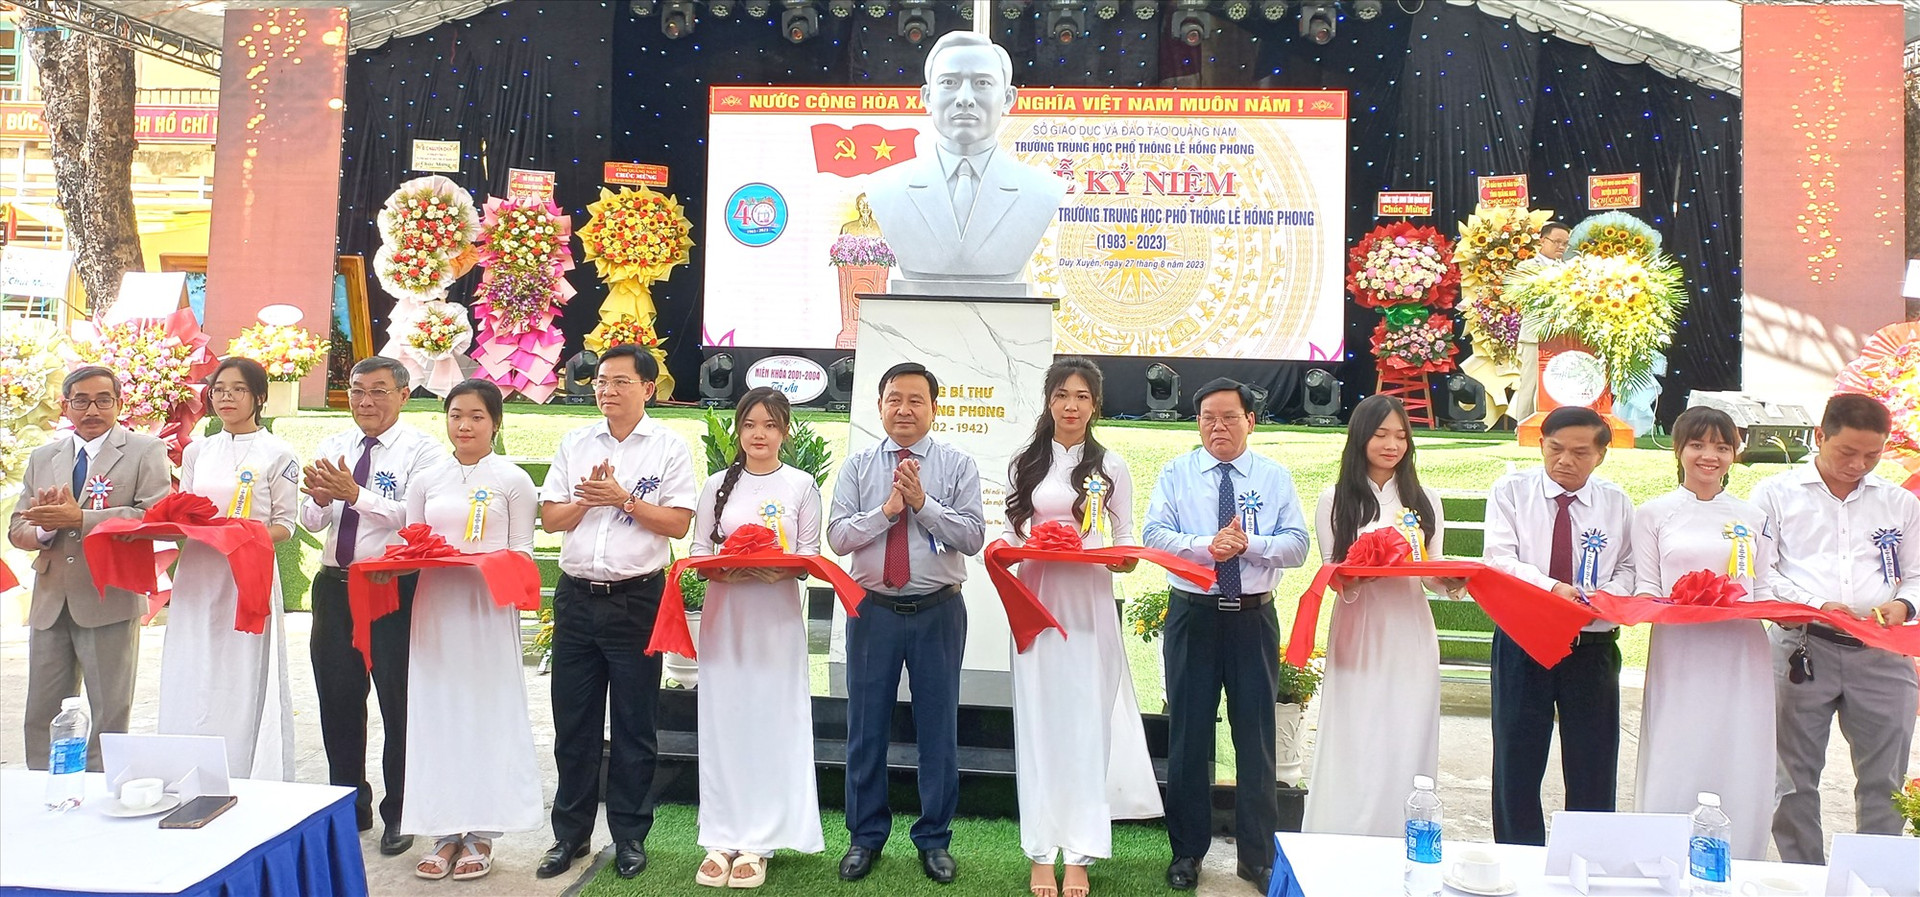 Thực hiện nghi thức khánh thành tượng cố Tổng Bí thư Lê Hồng Phong, công trình do cựu học sinh nhà trường trao tặng. Ảnh: C.T